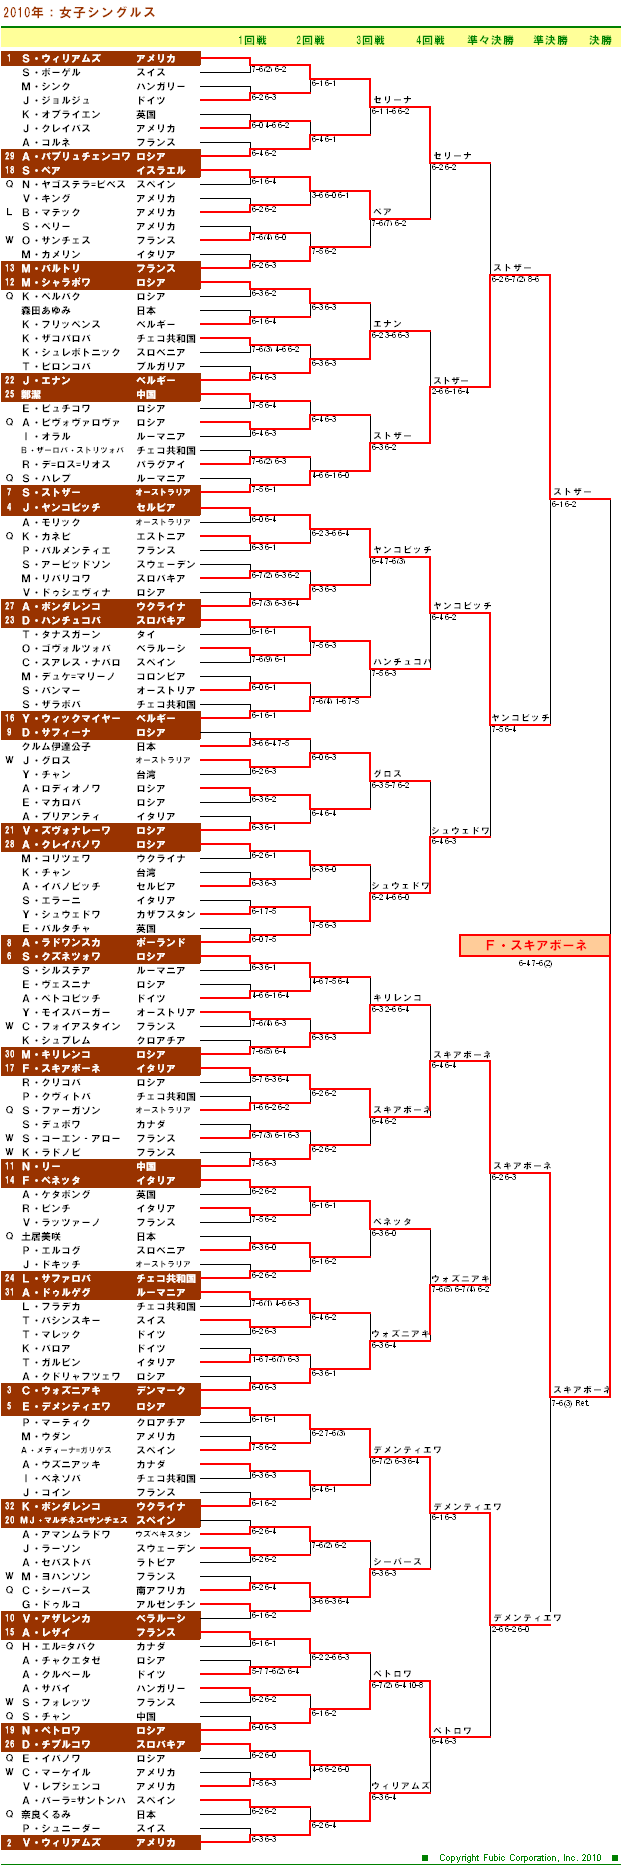 全仏オープンテニス2010　女子シングルスドロー表